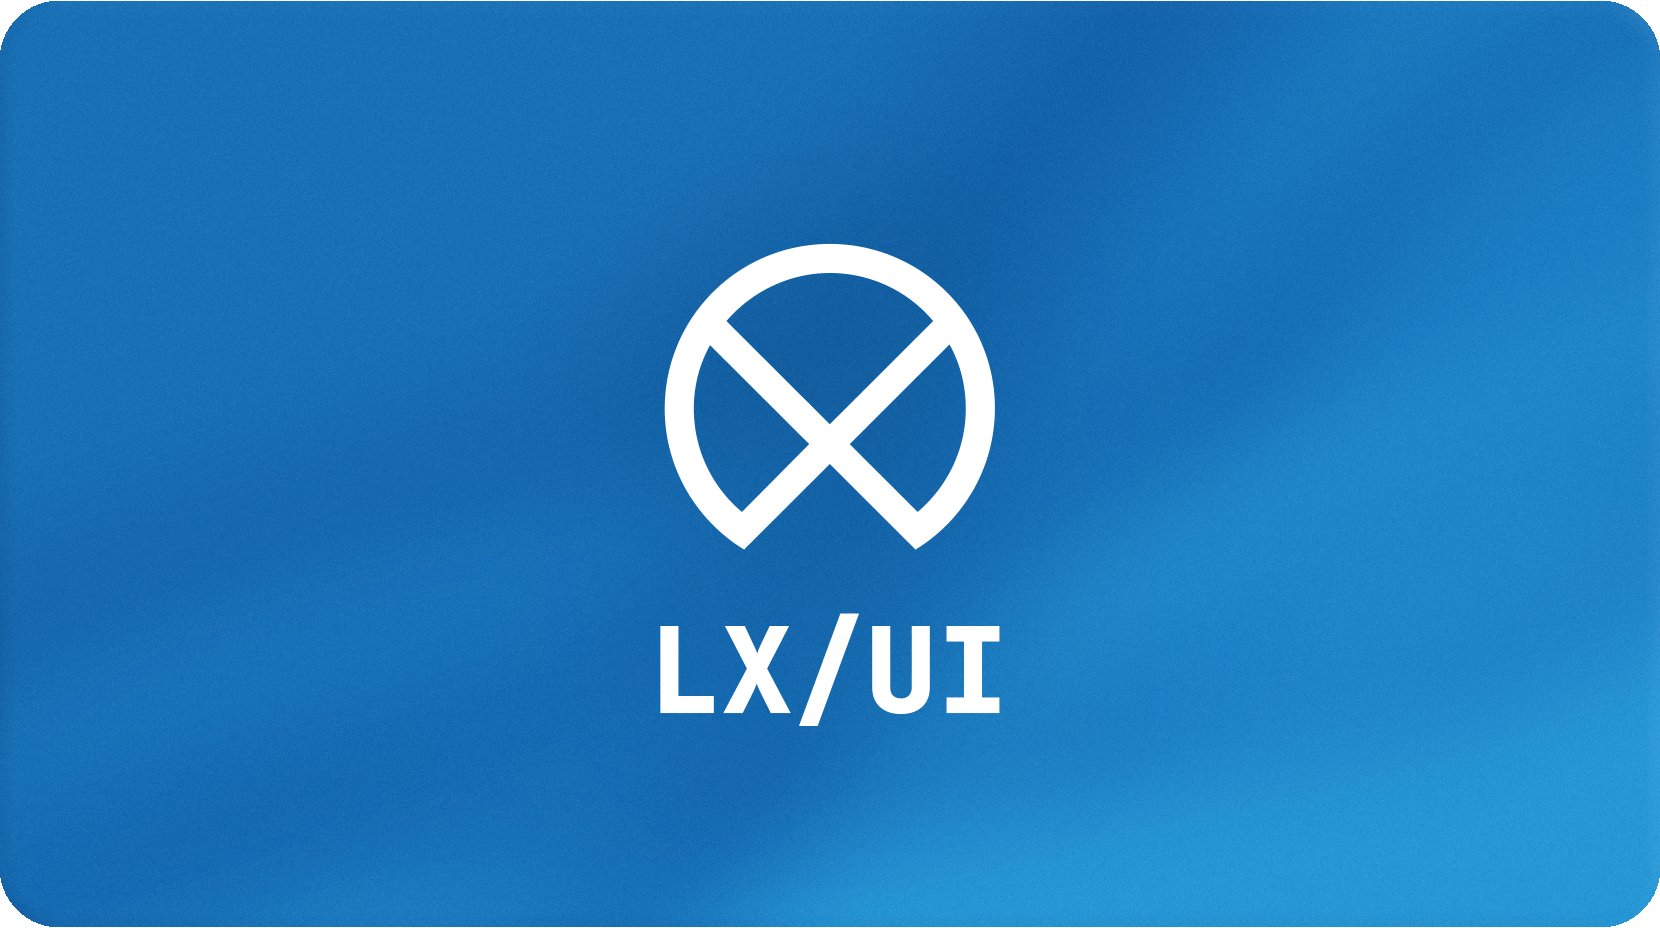 LX/UI